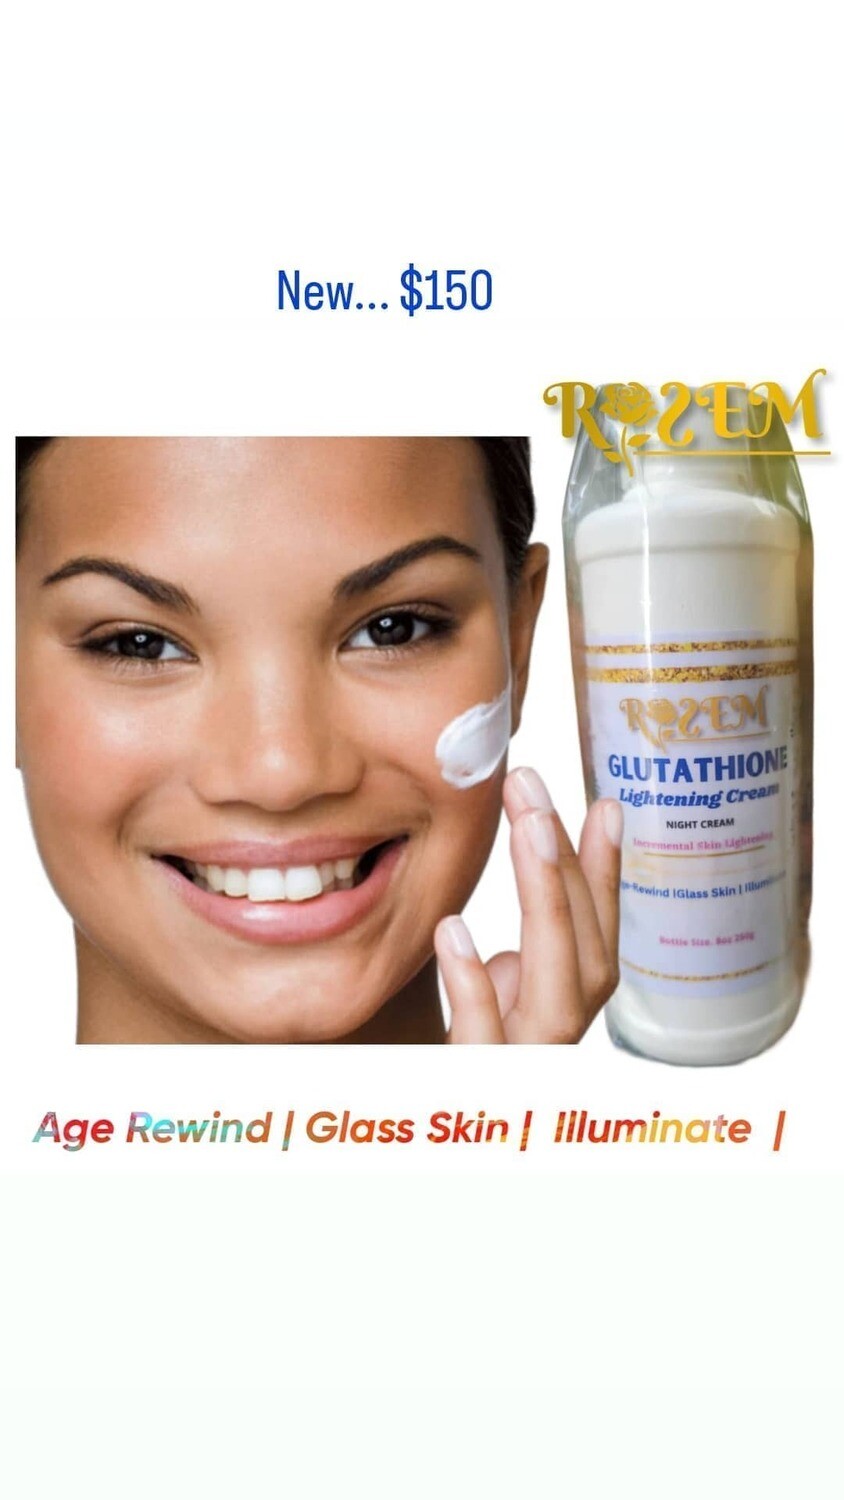 Glutathione Skin Lightening Cream 8oz